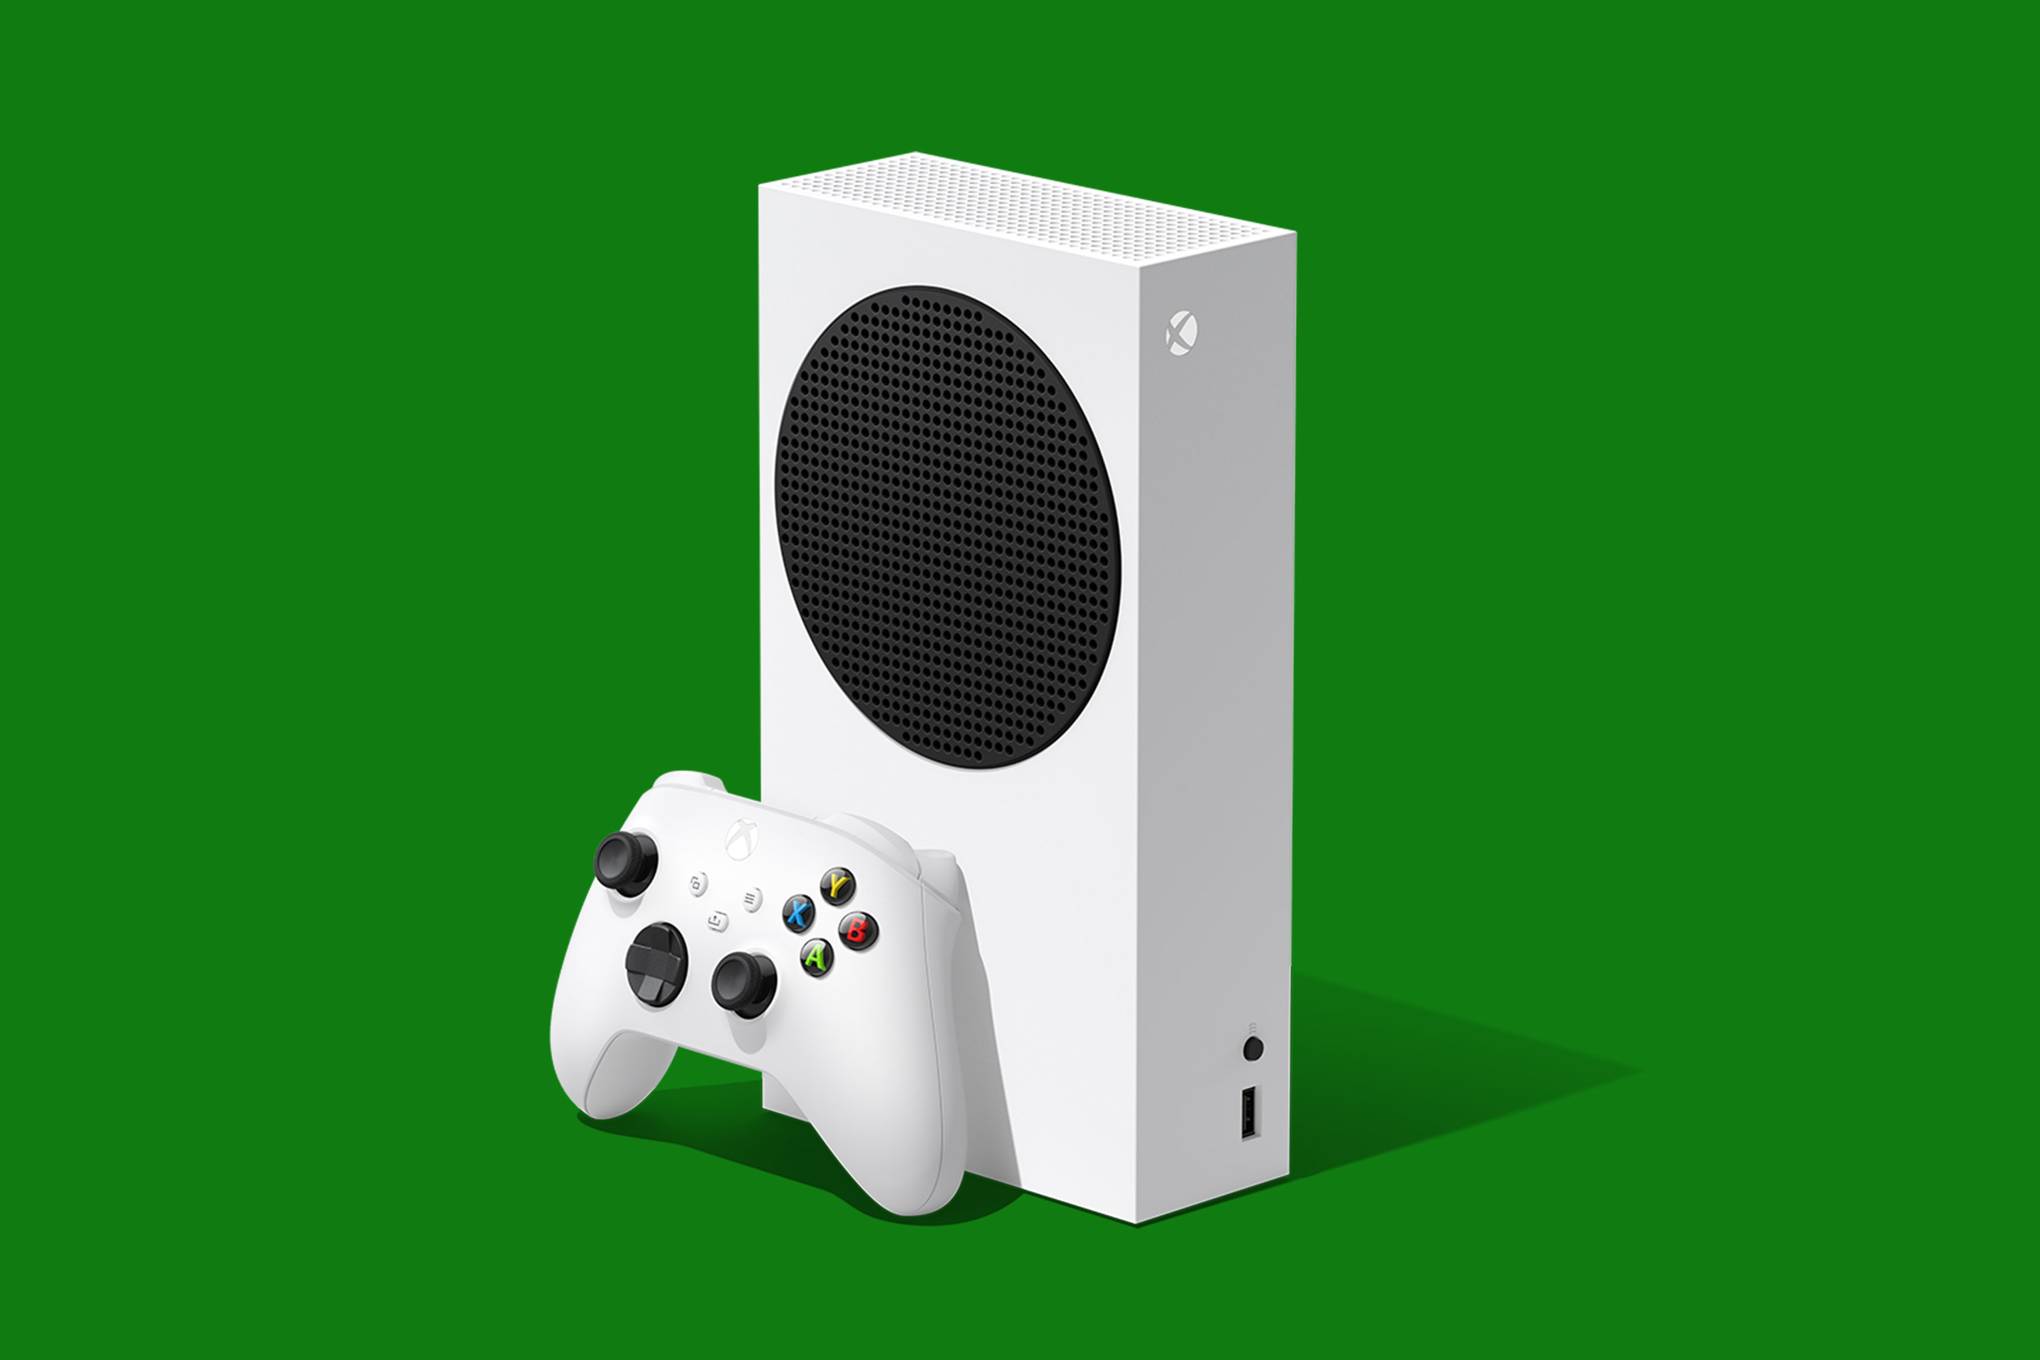 New Xbox S Specs Shop, 50% OFF | www.pegasusaerogroup.com